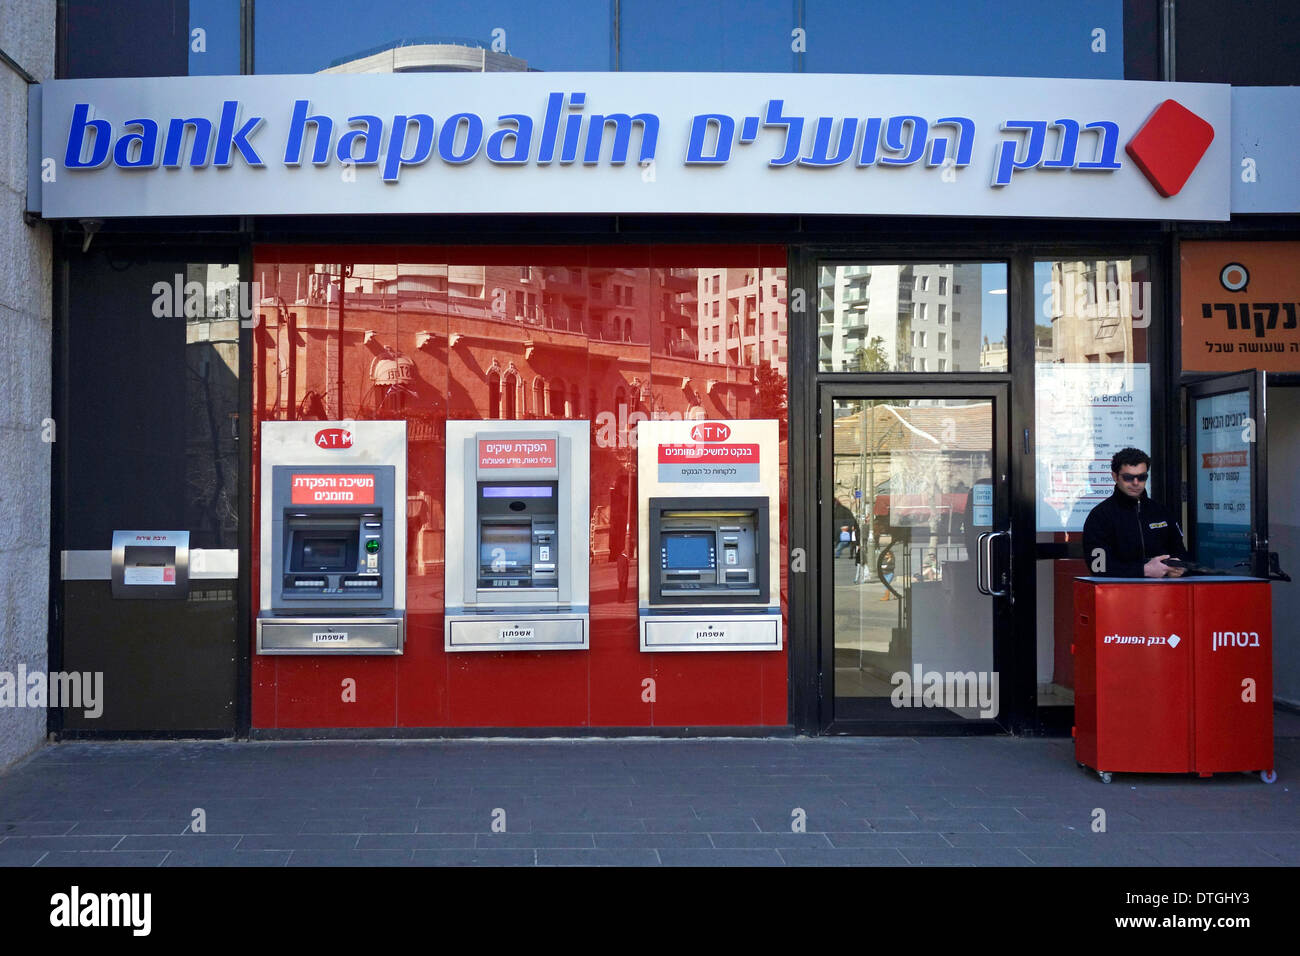 El 18 de febrero de 2014, un guardia de seguridad se encuentra en la entrada del Banco Hapoalim en Jerusalén. El Deutsche Bank incluye al banco israelí en una lista de empresas cuya conducta es éticamente cuestionable, posiblemente debido a su actividad en los asentamientos judíos de Cisjordania Foto de stock